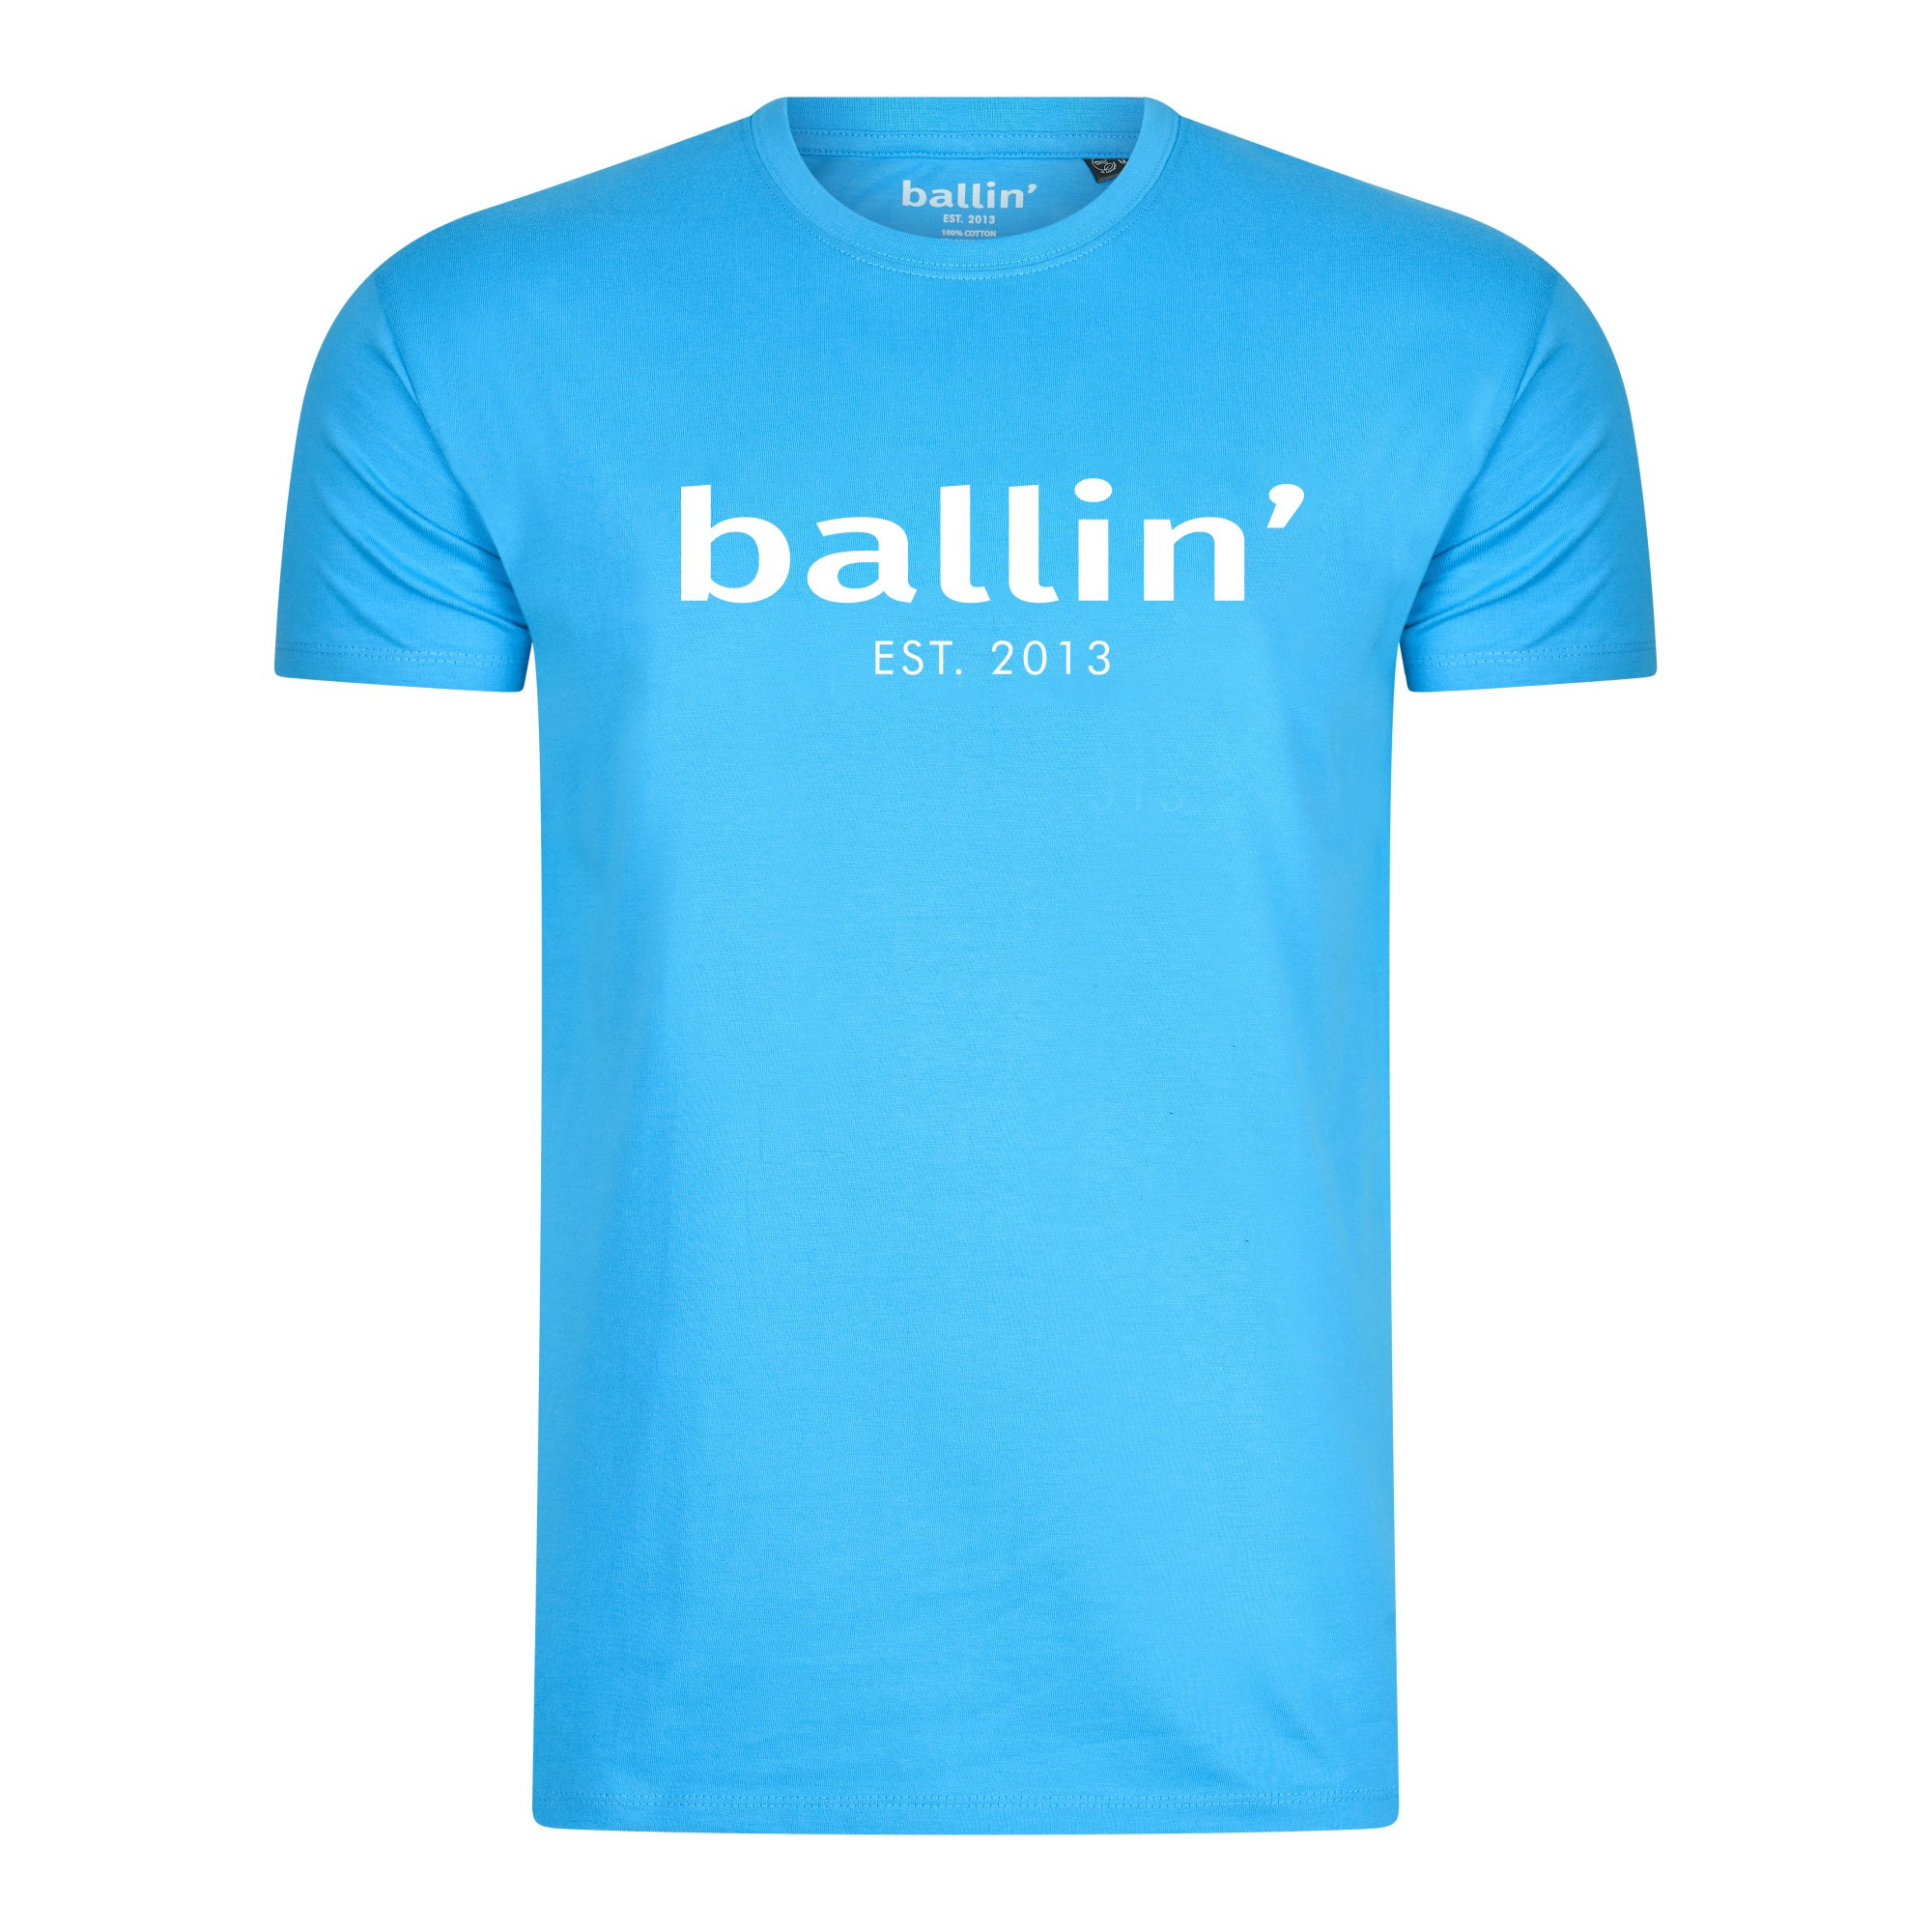 Afbeelding van Ballin Est. 2013 Regular fit shirt